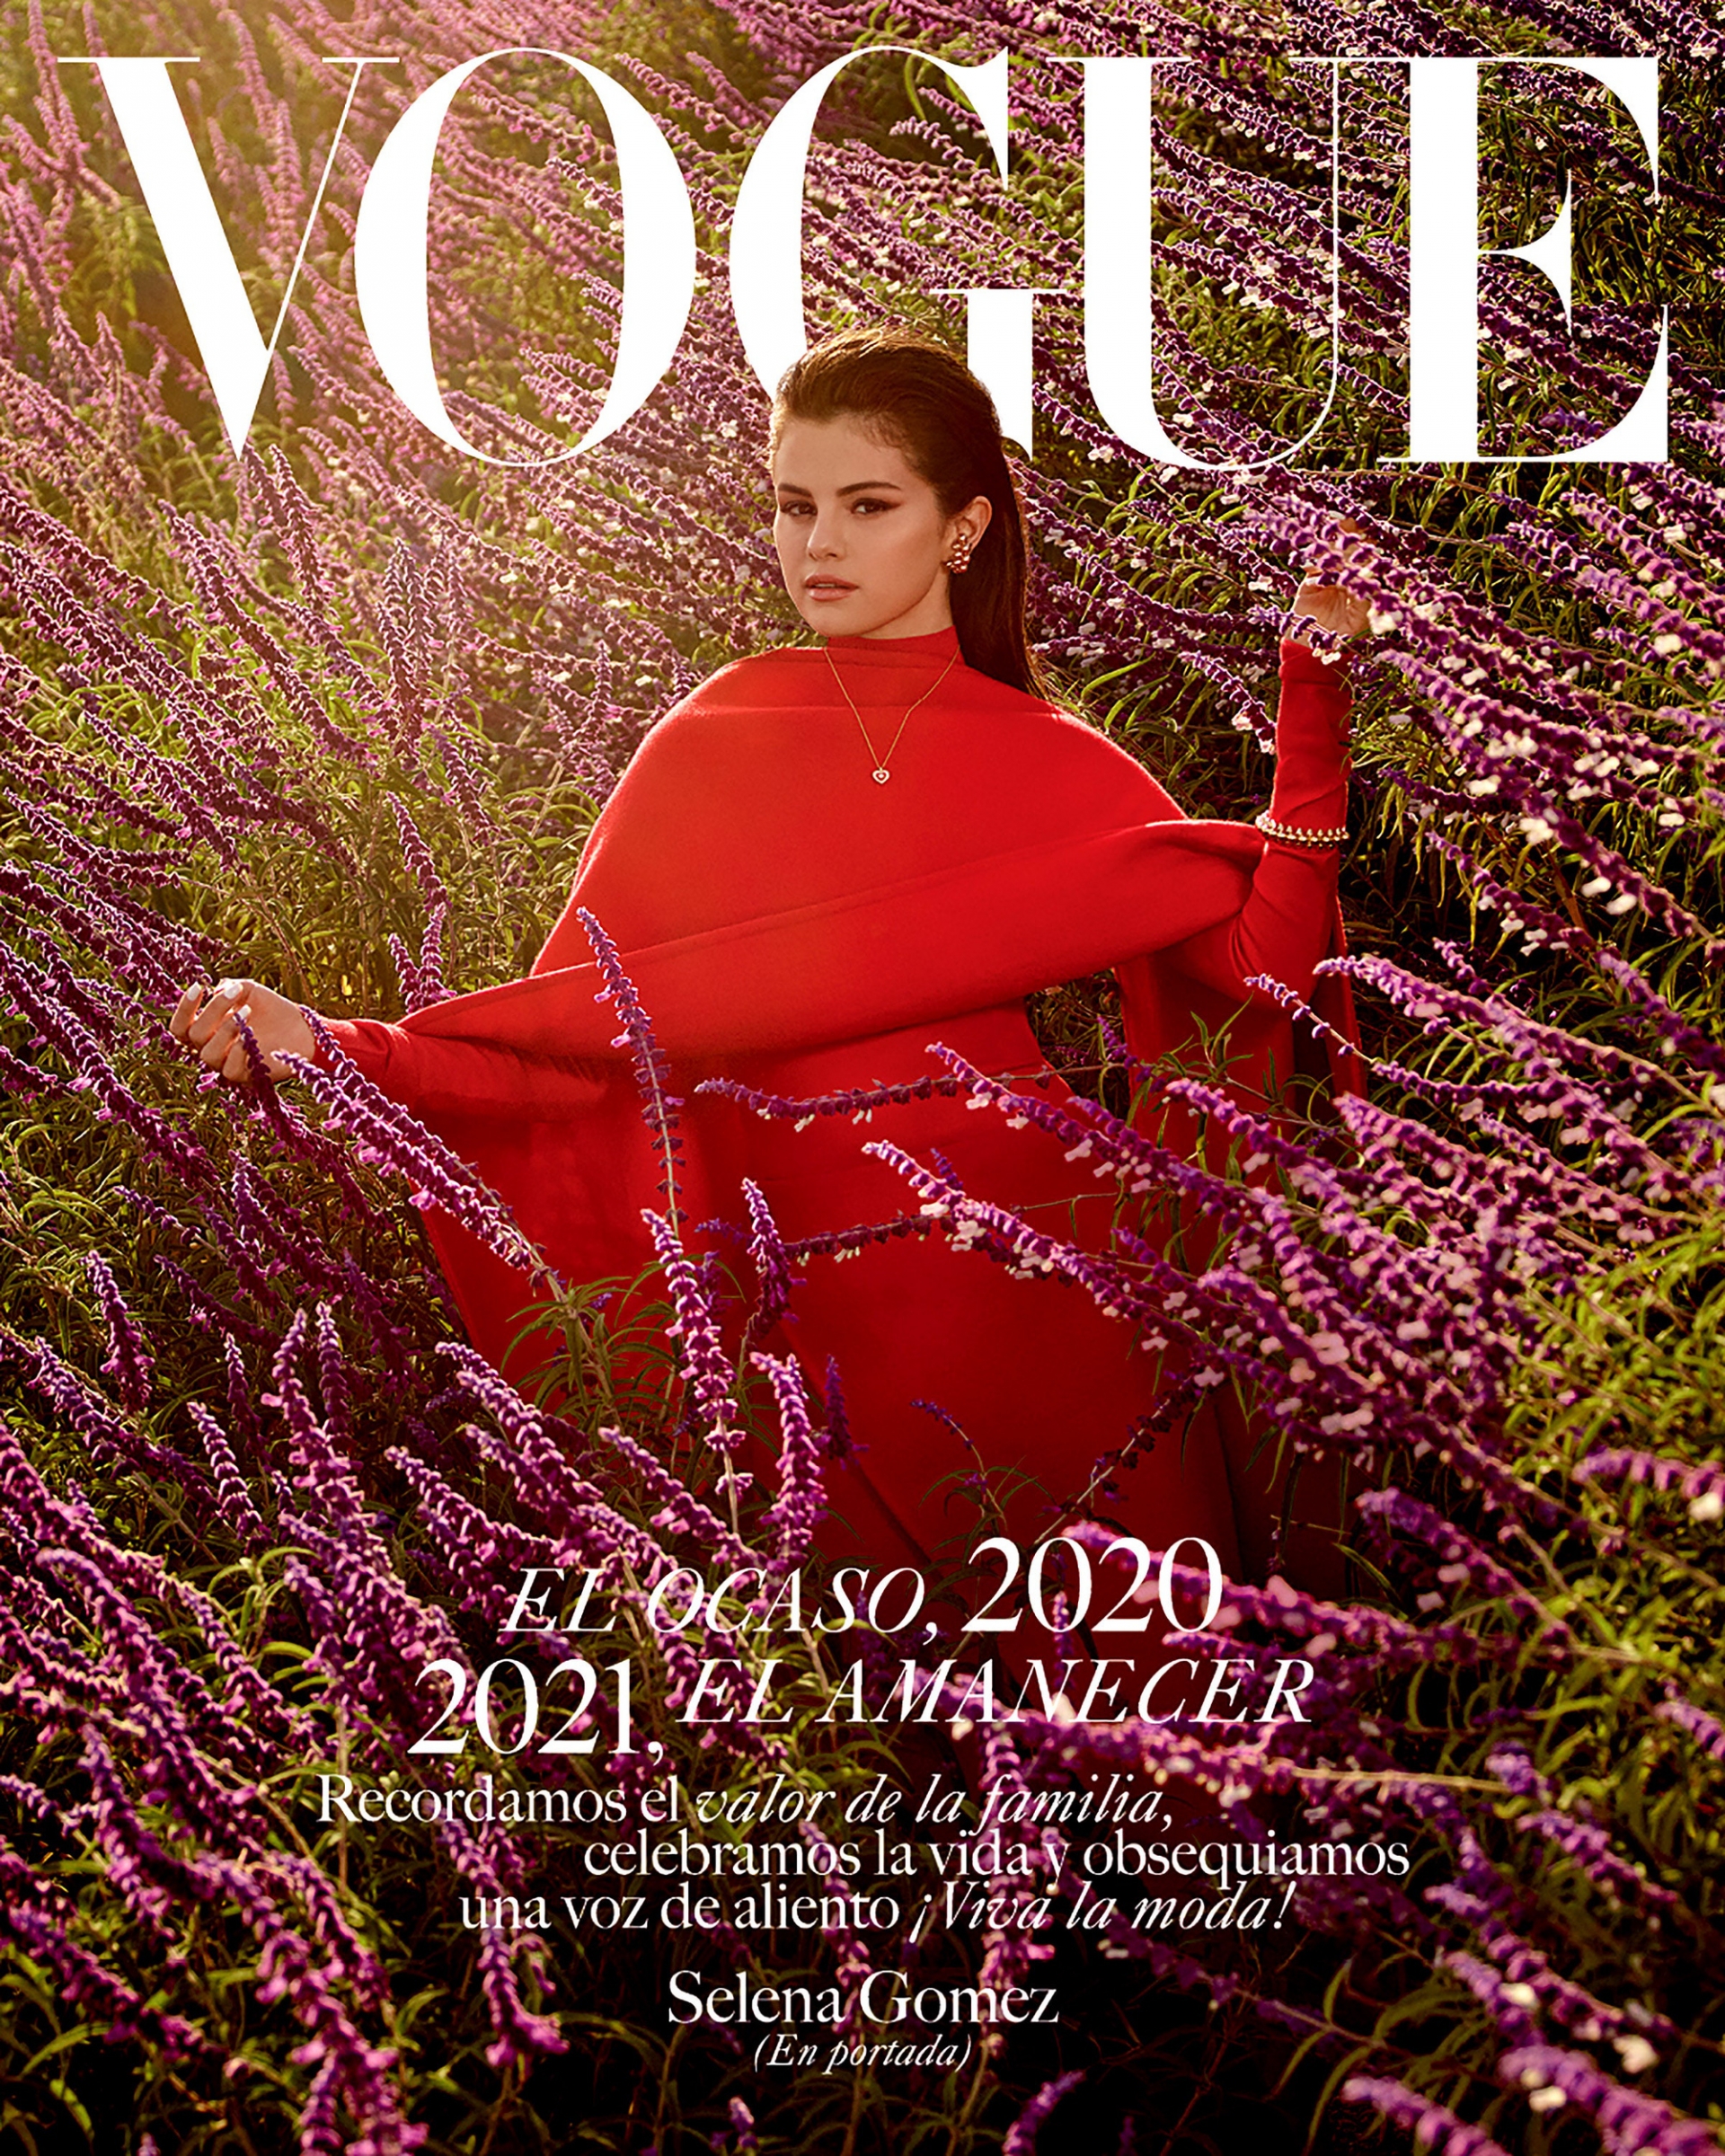 Senela Gomez mở màn trên Vogue Mexico và América Latina (Mỹ La-tinh), trong bộ váy len đỏ rực rỡ, mái tóc chải ngược kiêu kỳ cực cuốn hút.